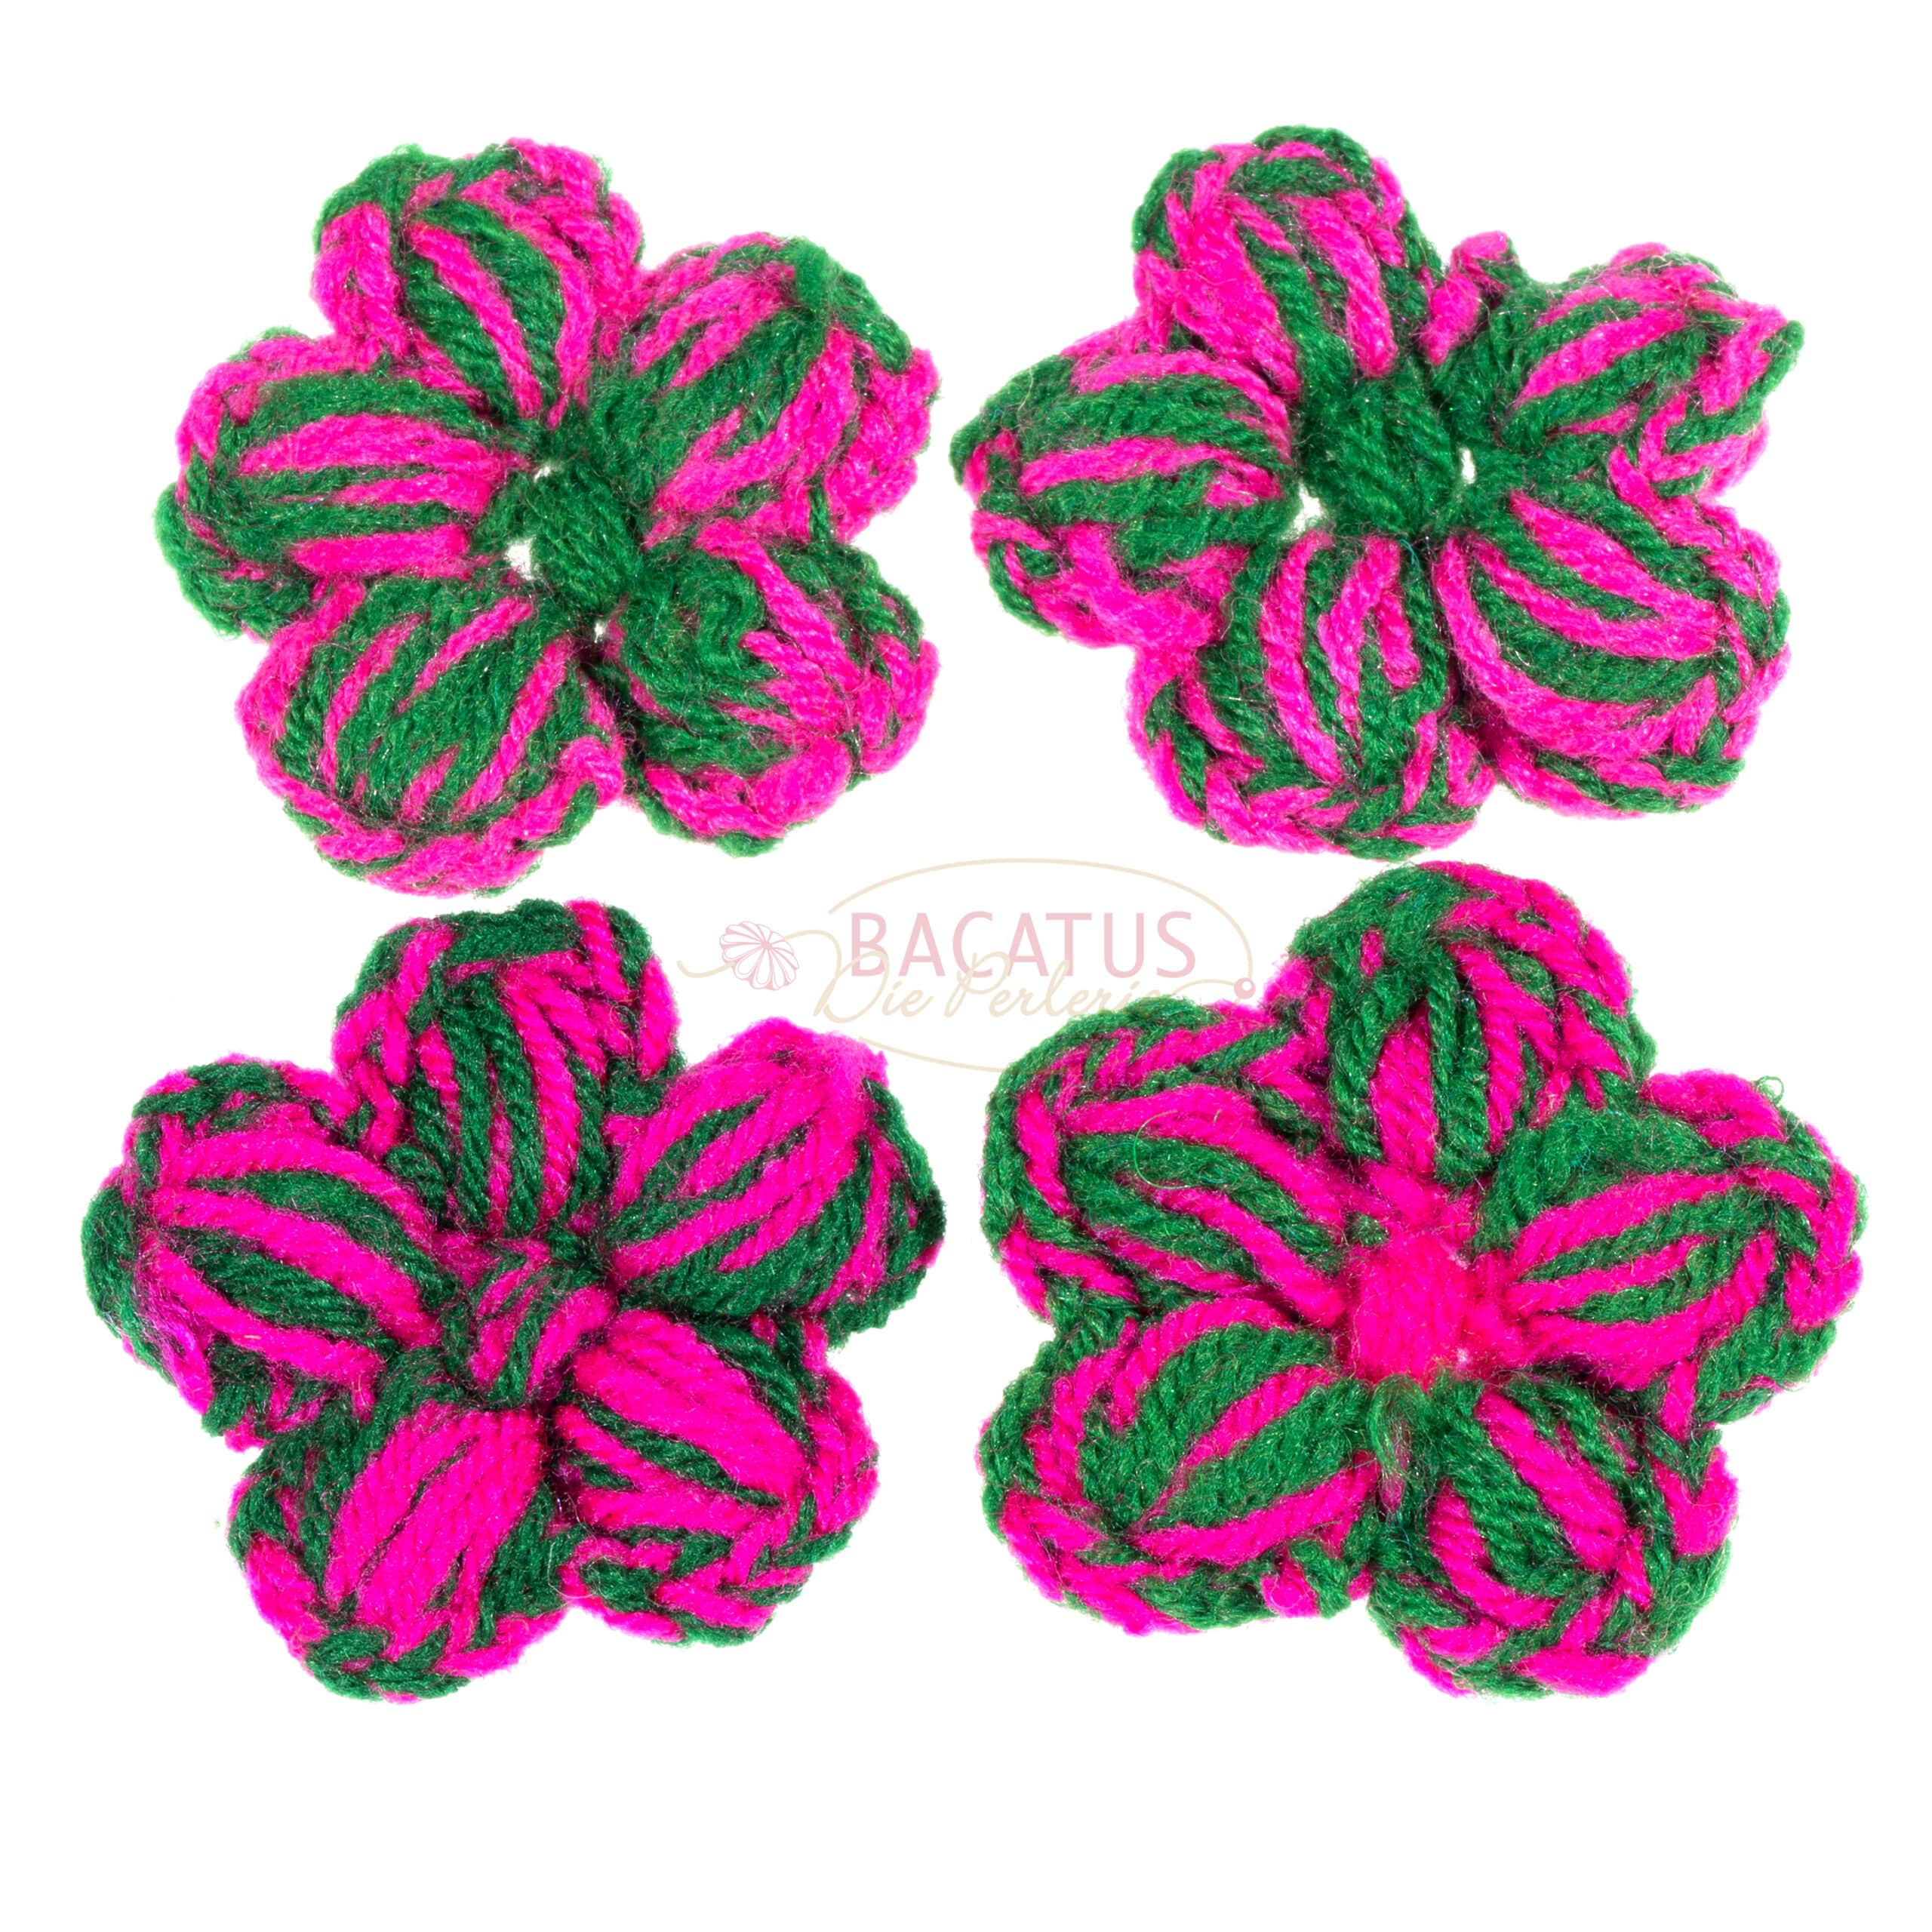 Filzperlen Blume grün lila-pink, 4x